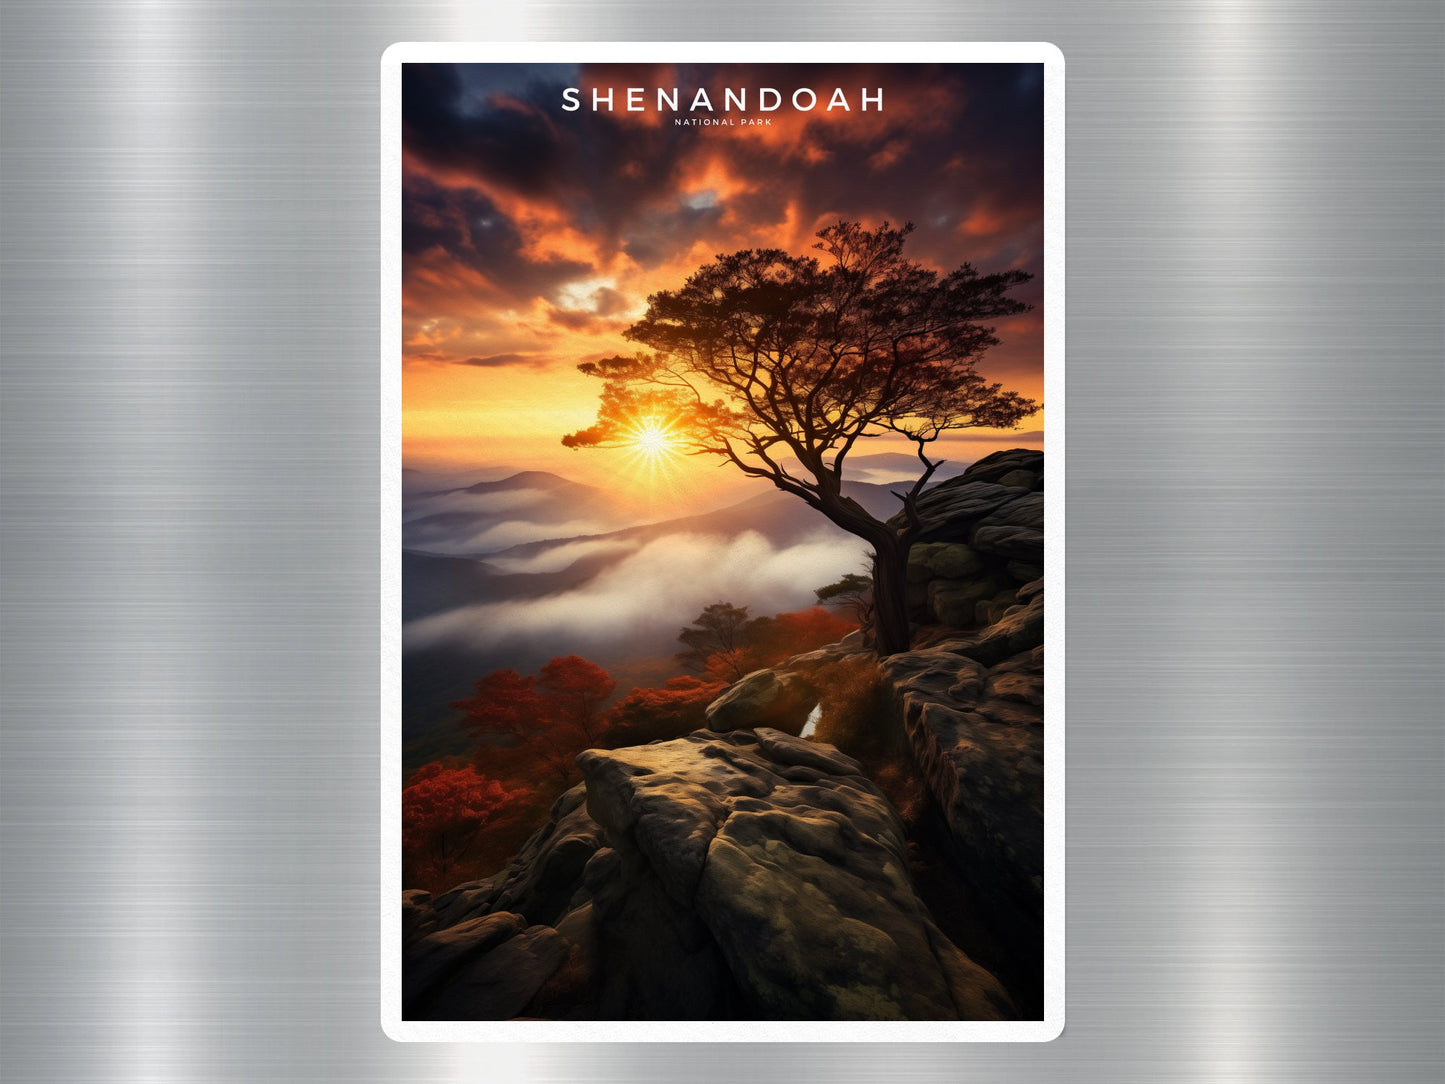 Shenandoah National Park Sticker